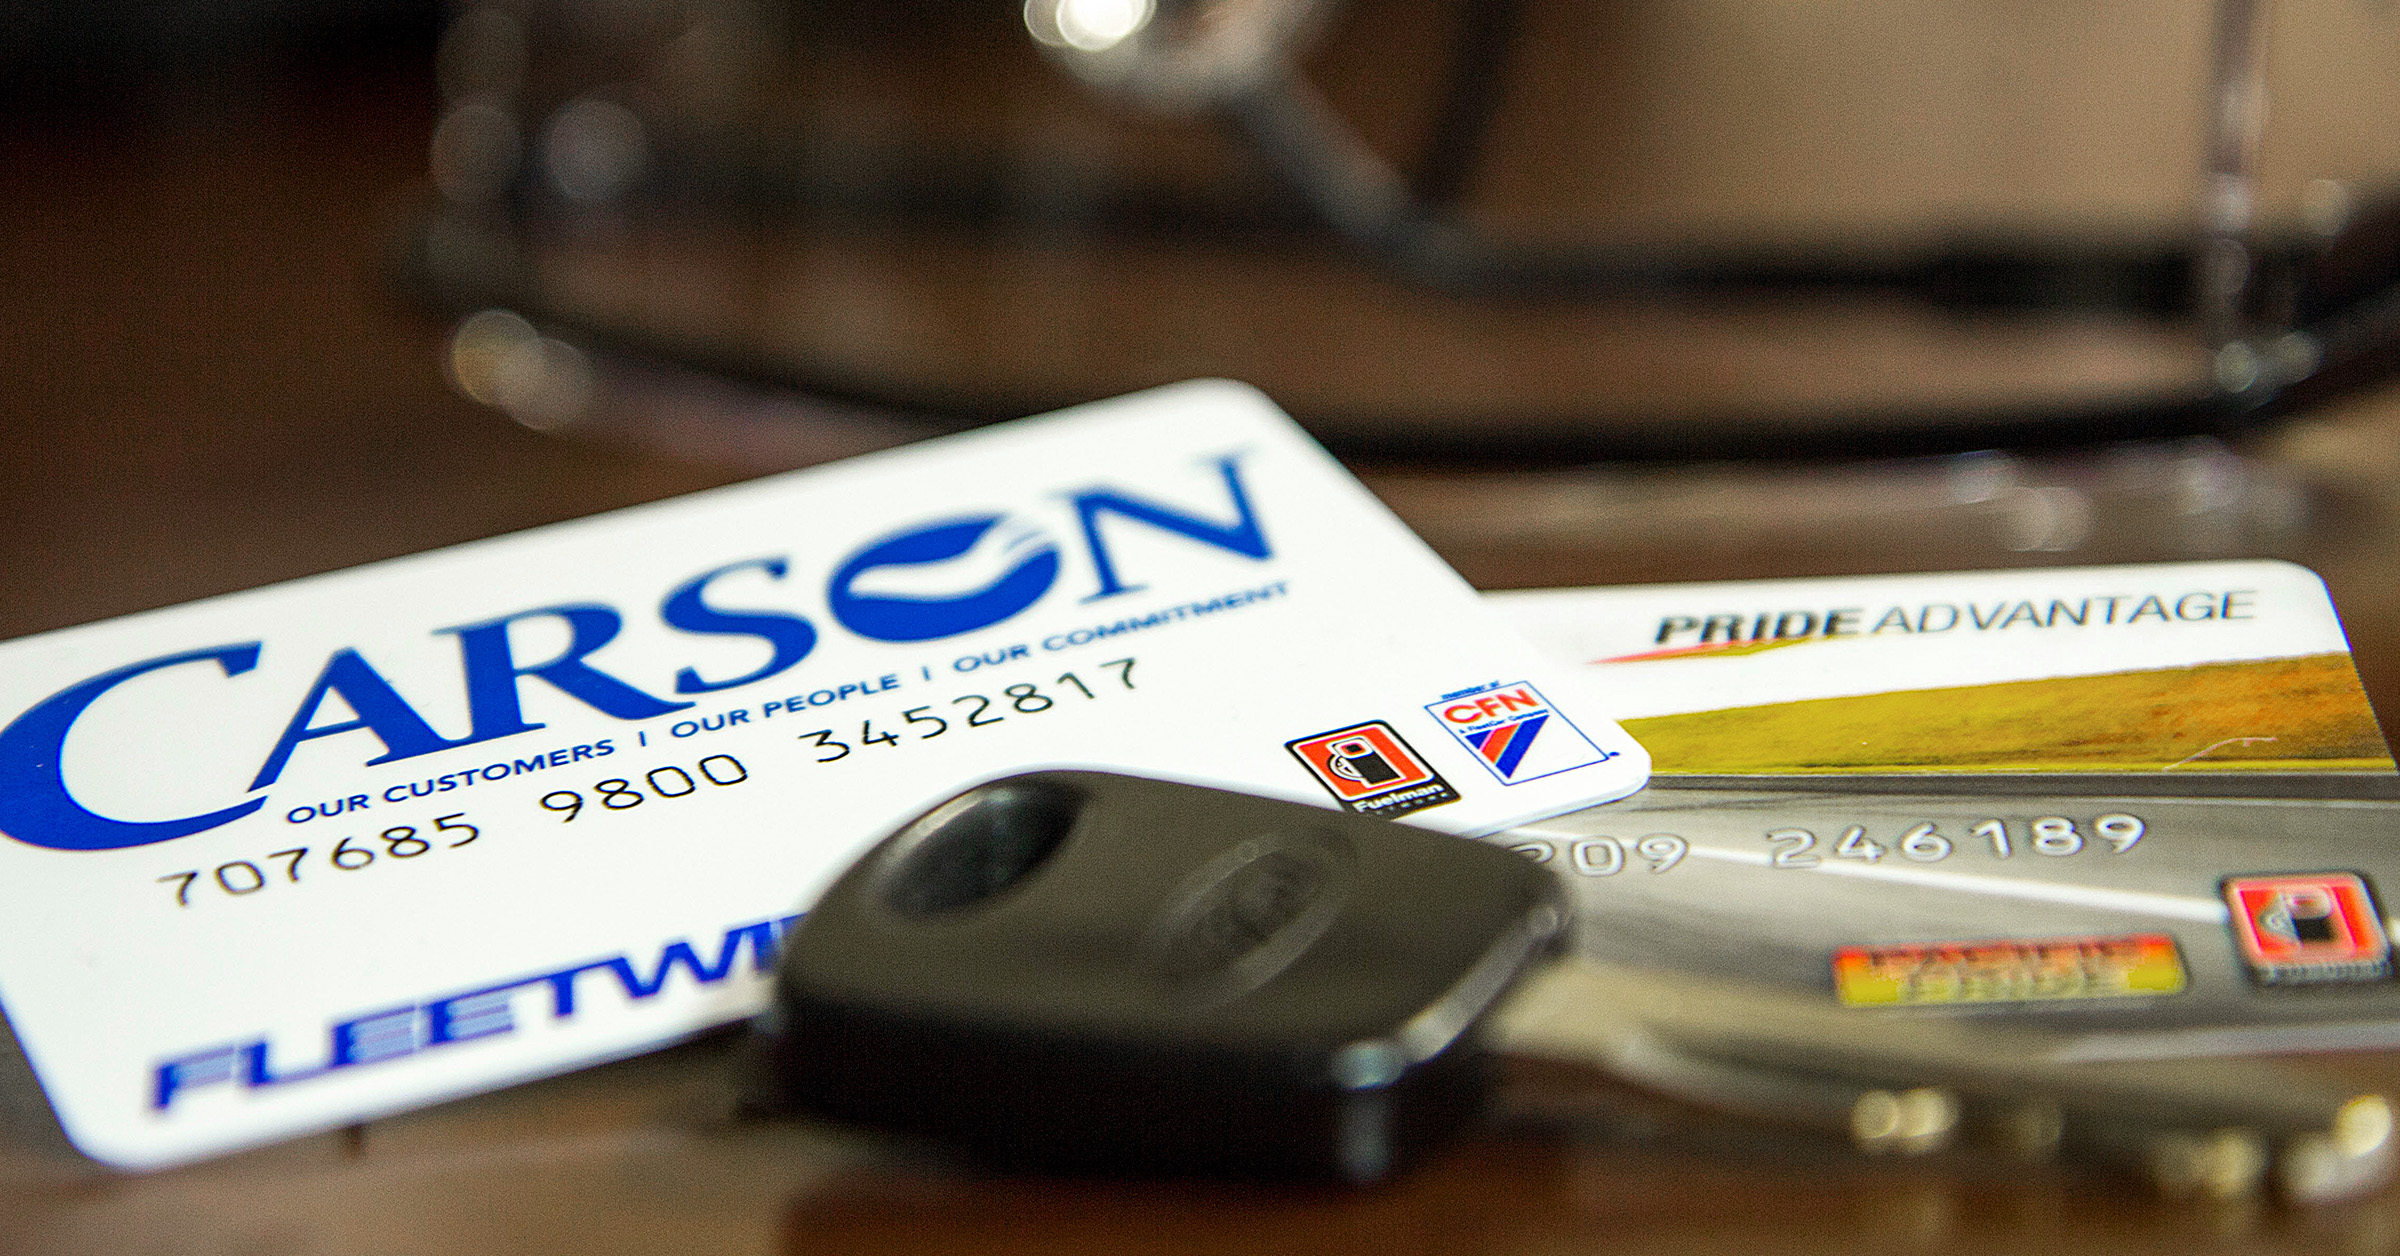 Carson fleet fuel cards on a table with keys